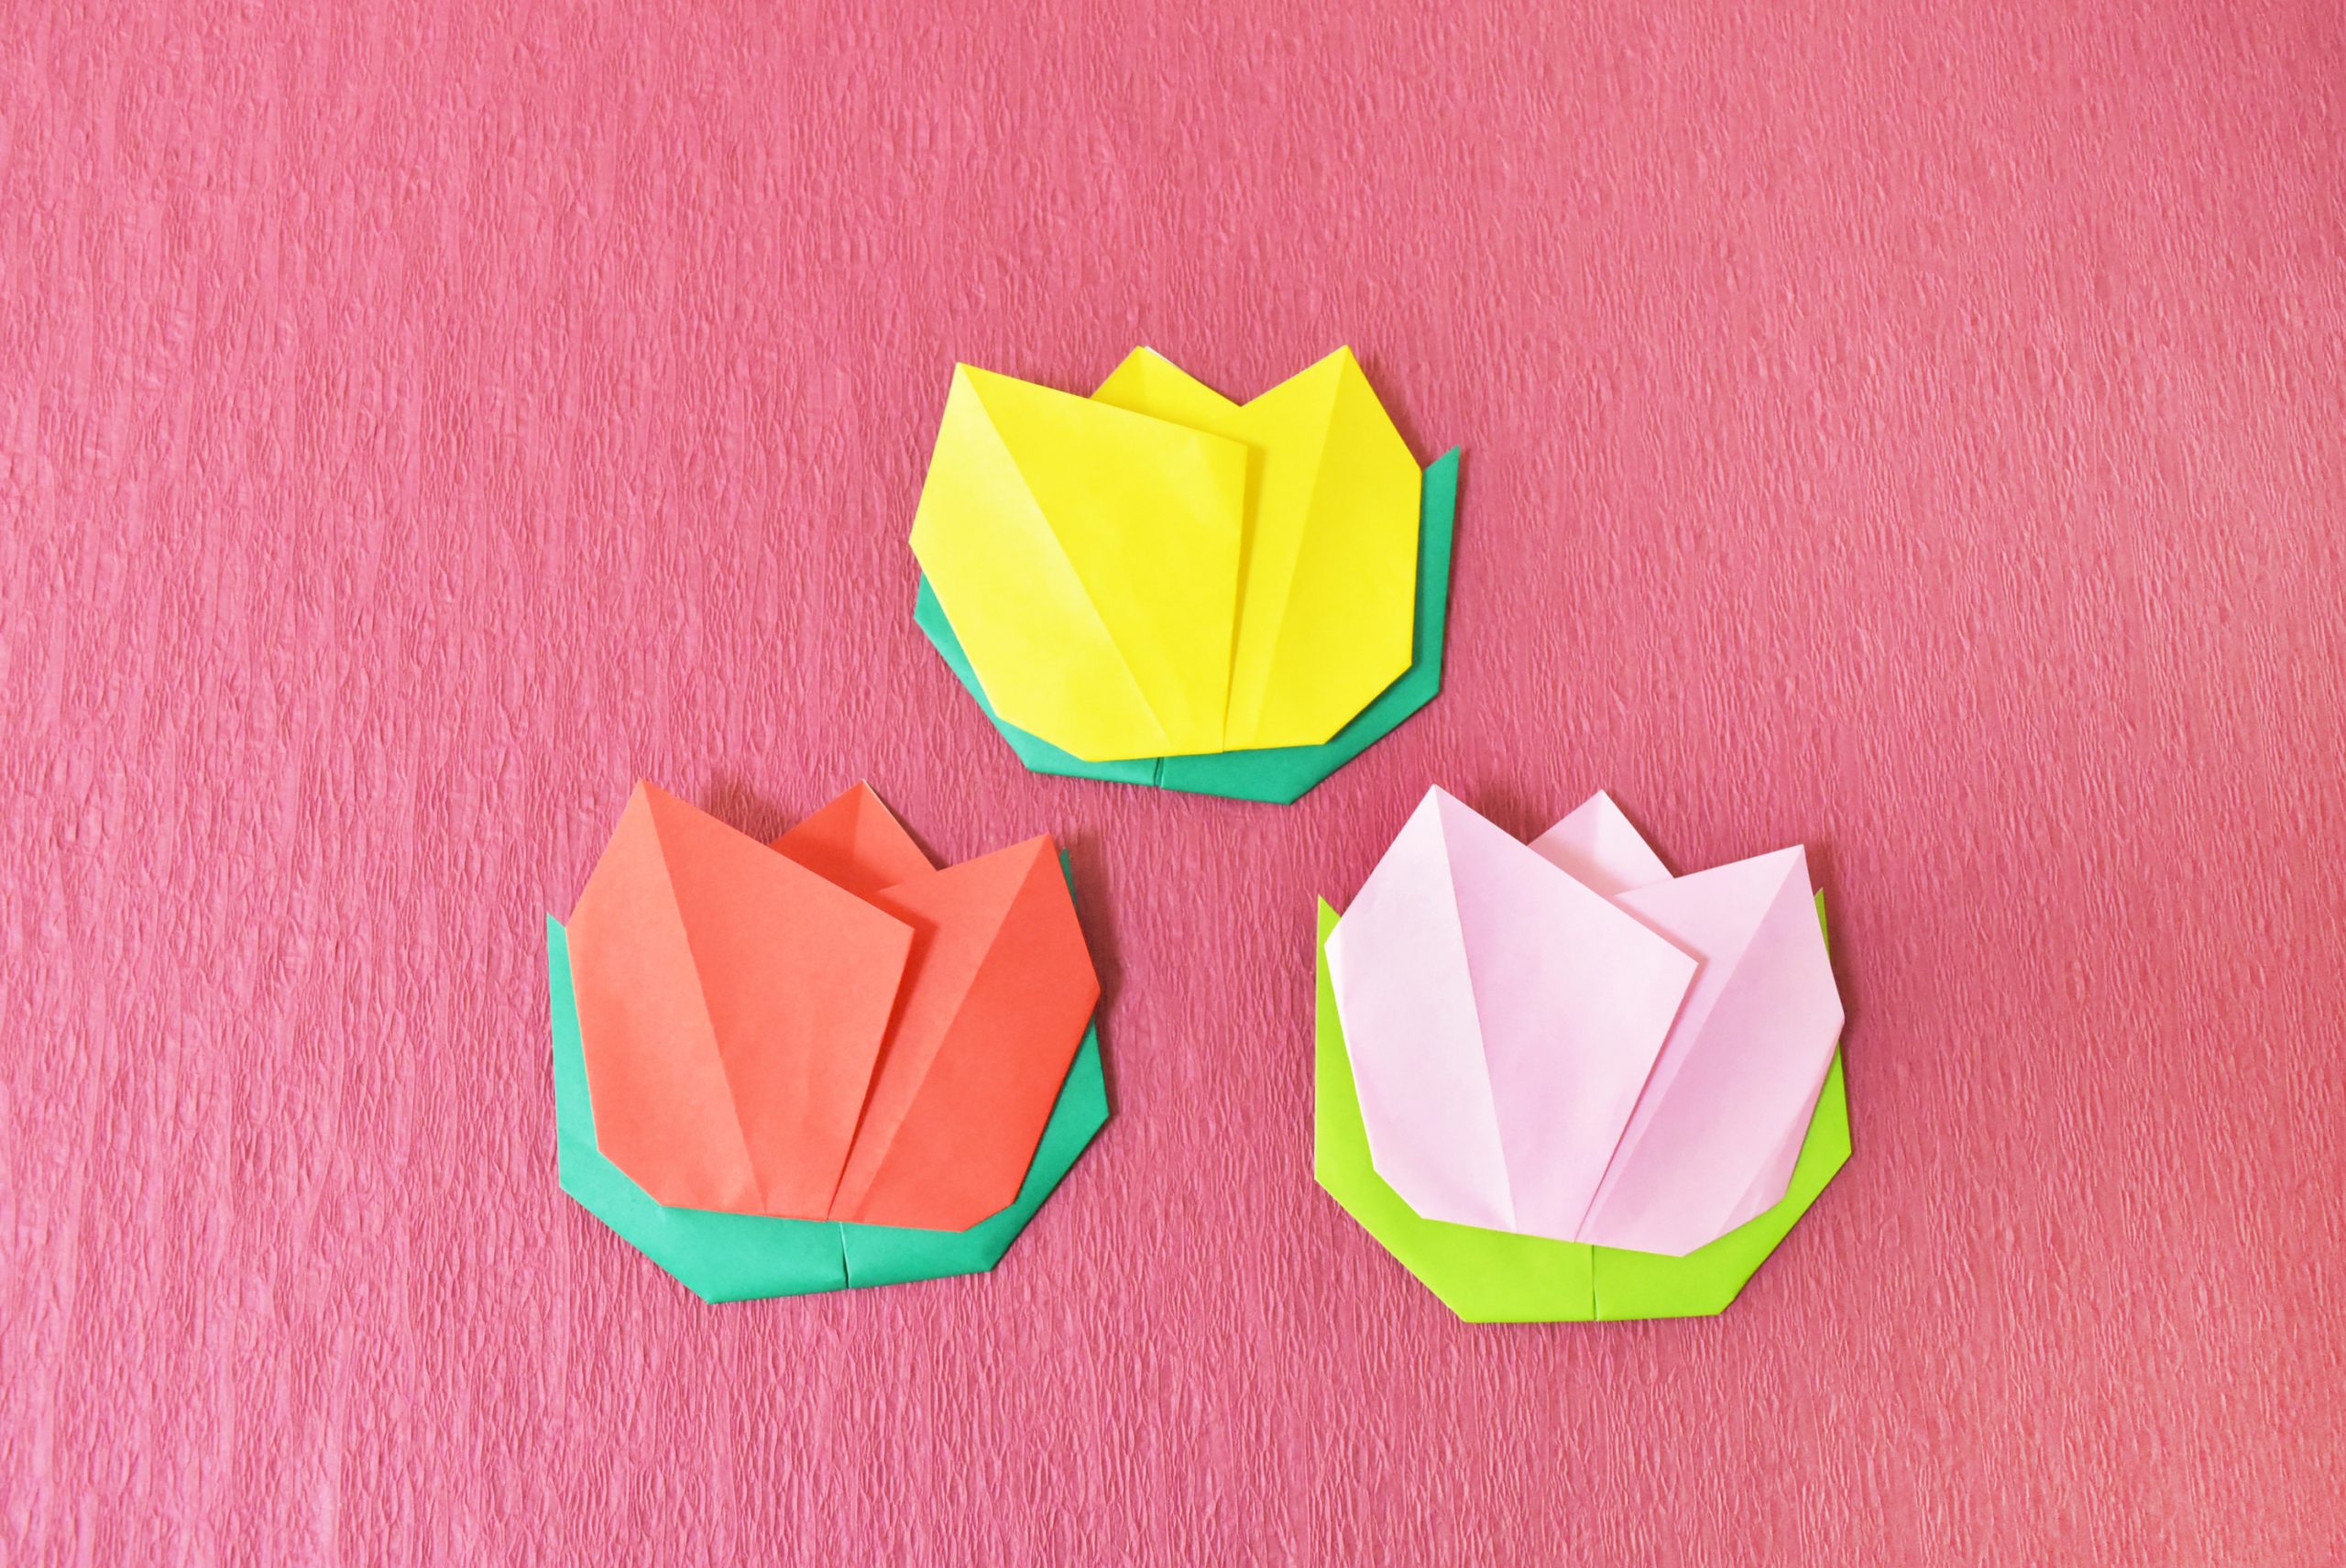 【折り紙】子どもでも簡単に折れるチューリップの折り方